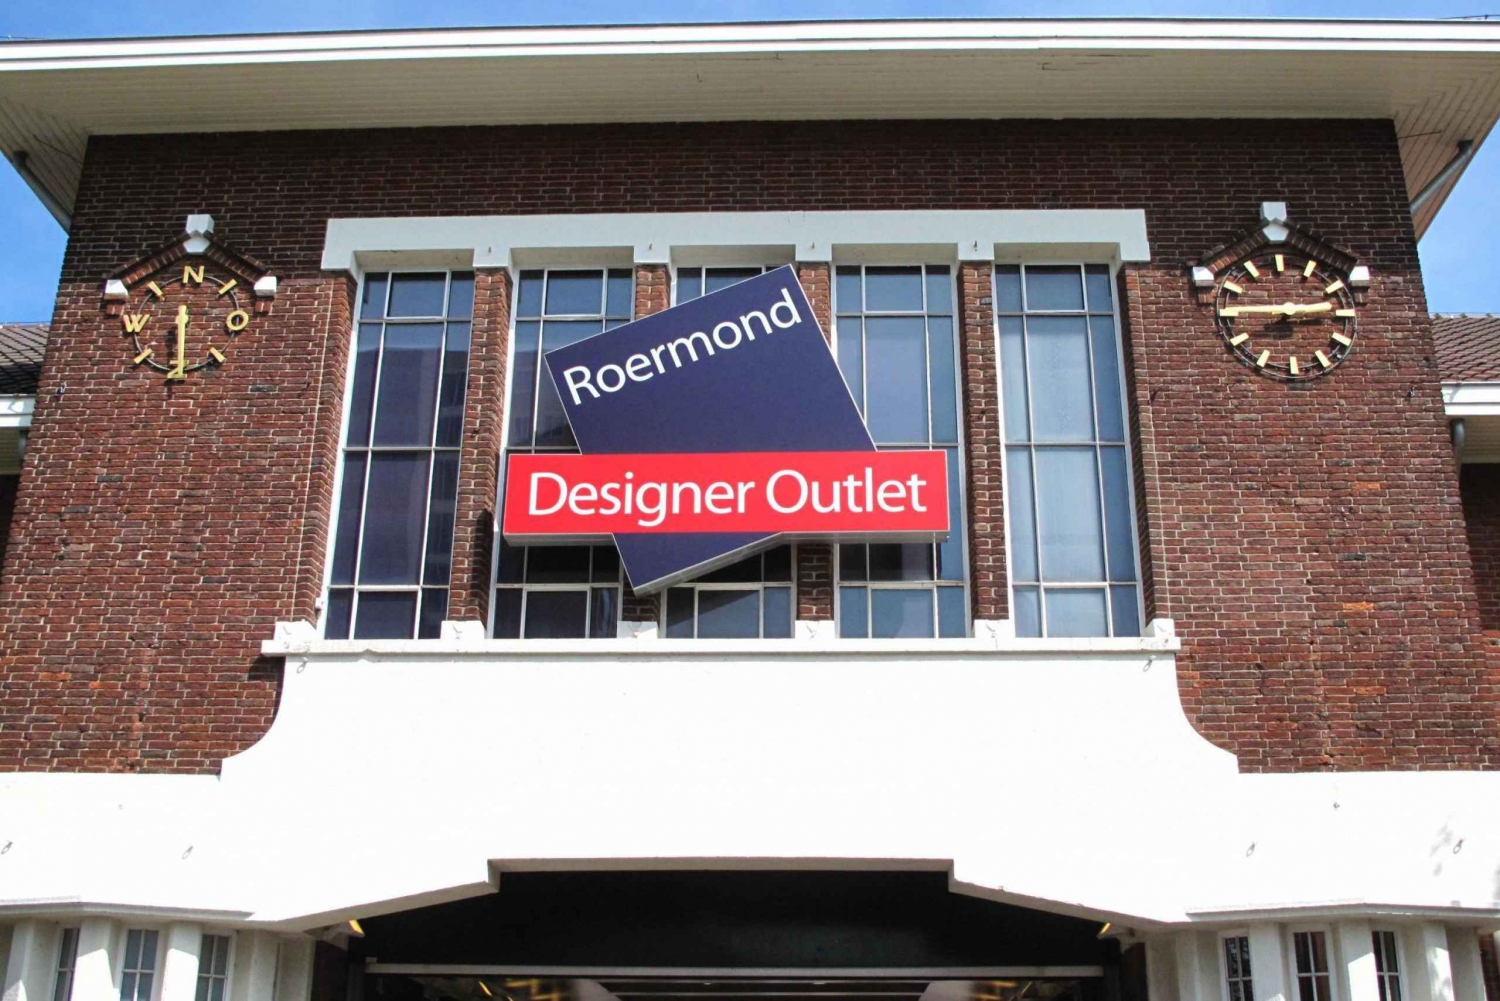 Amsterdam: Privé Dagtocht naar Designer Outlet Roermond